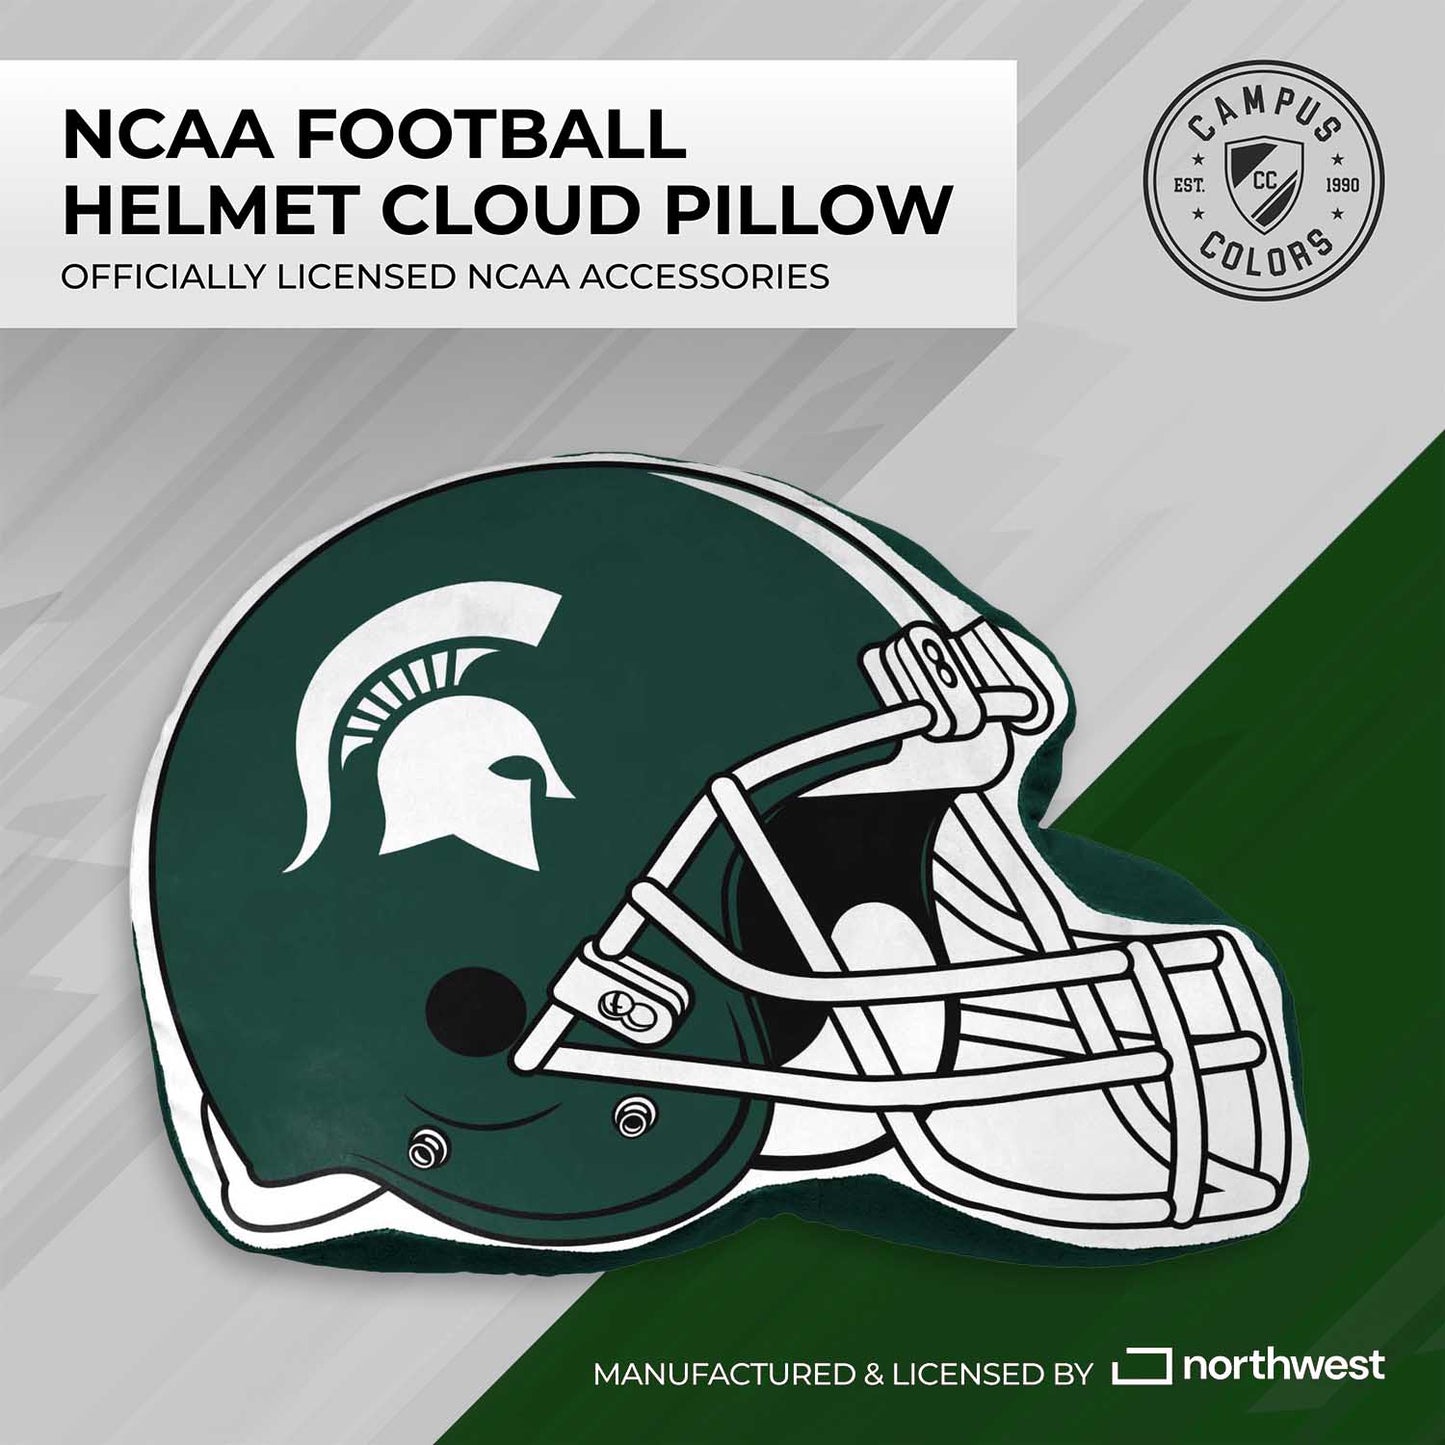 Michigan State Spartans NCAA Helmet Super Soft Football Pillow - Green